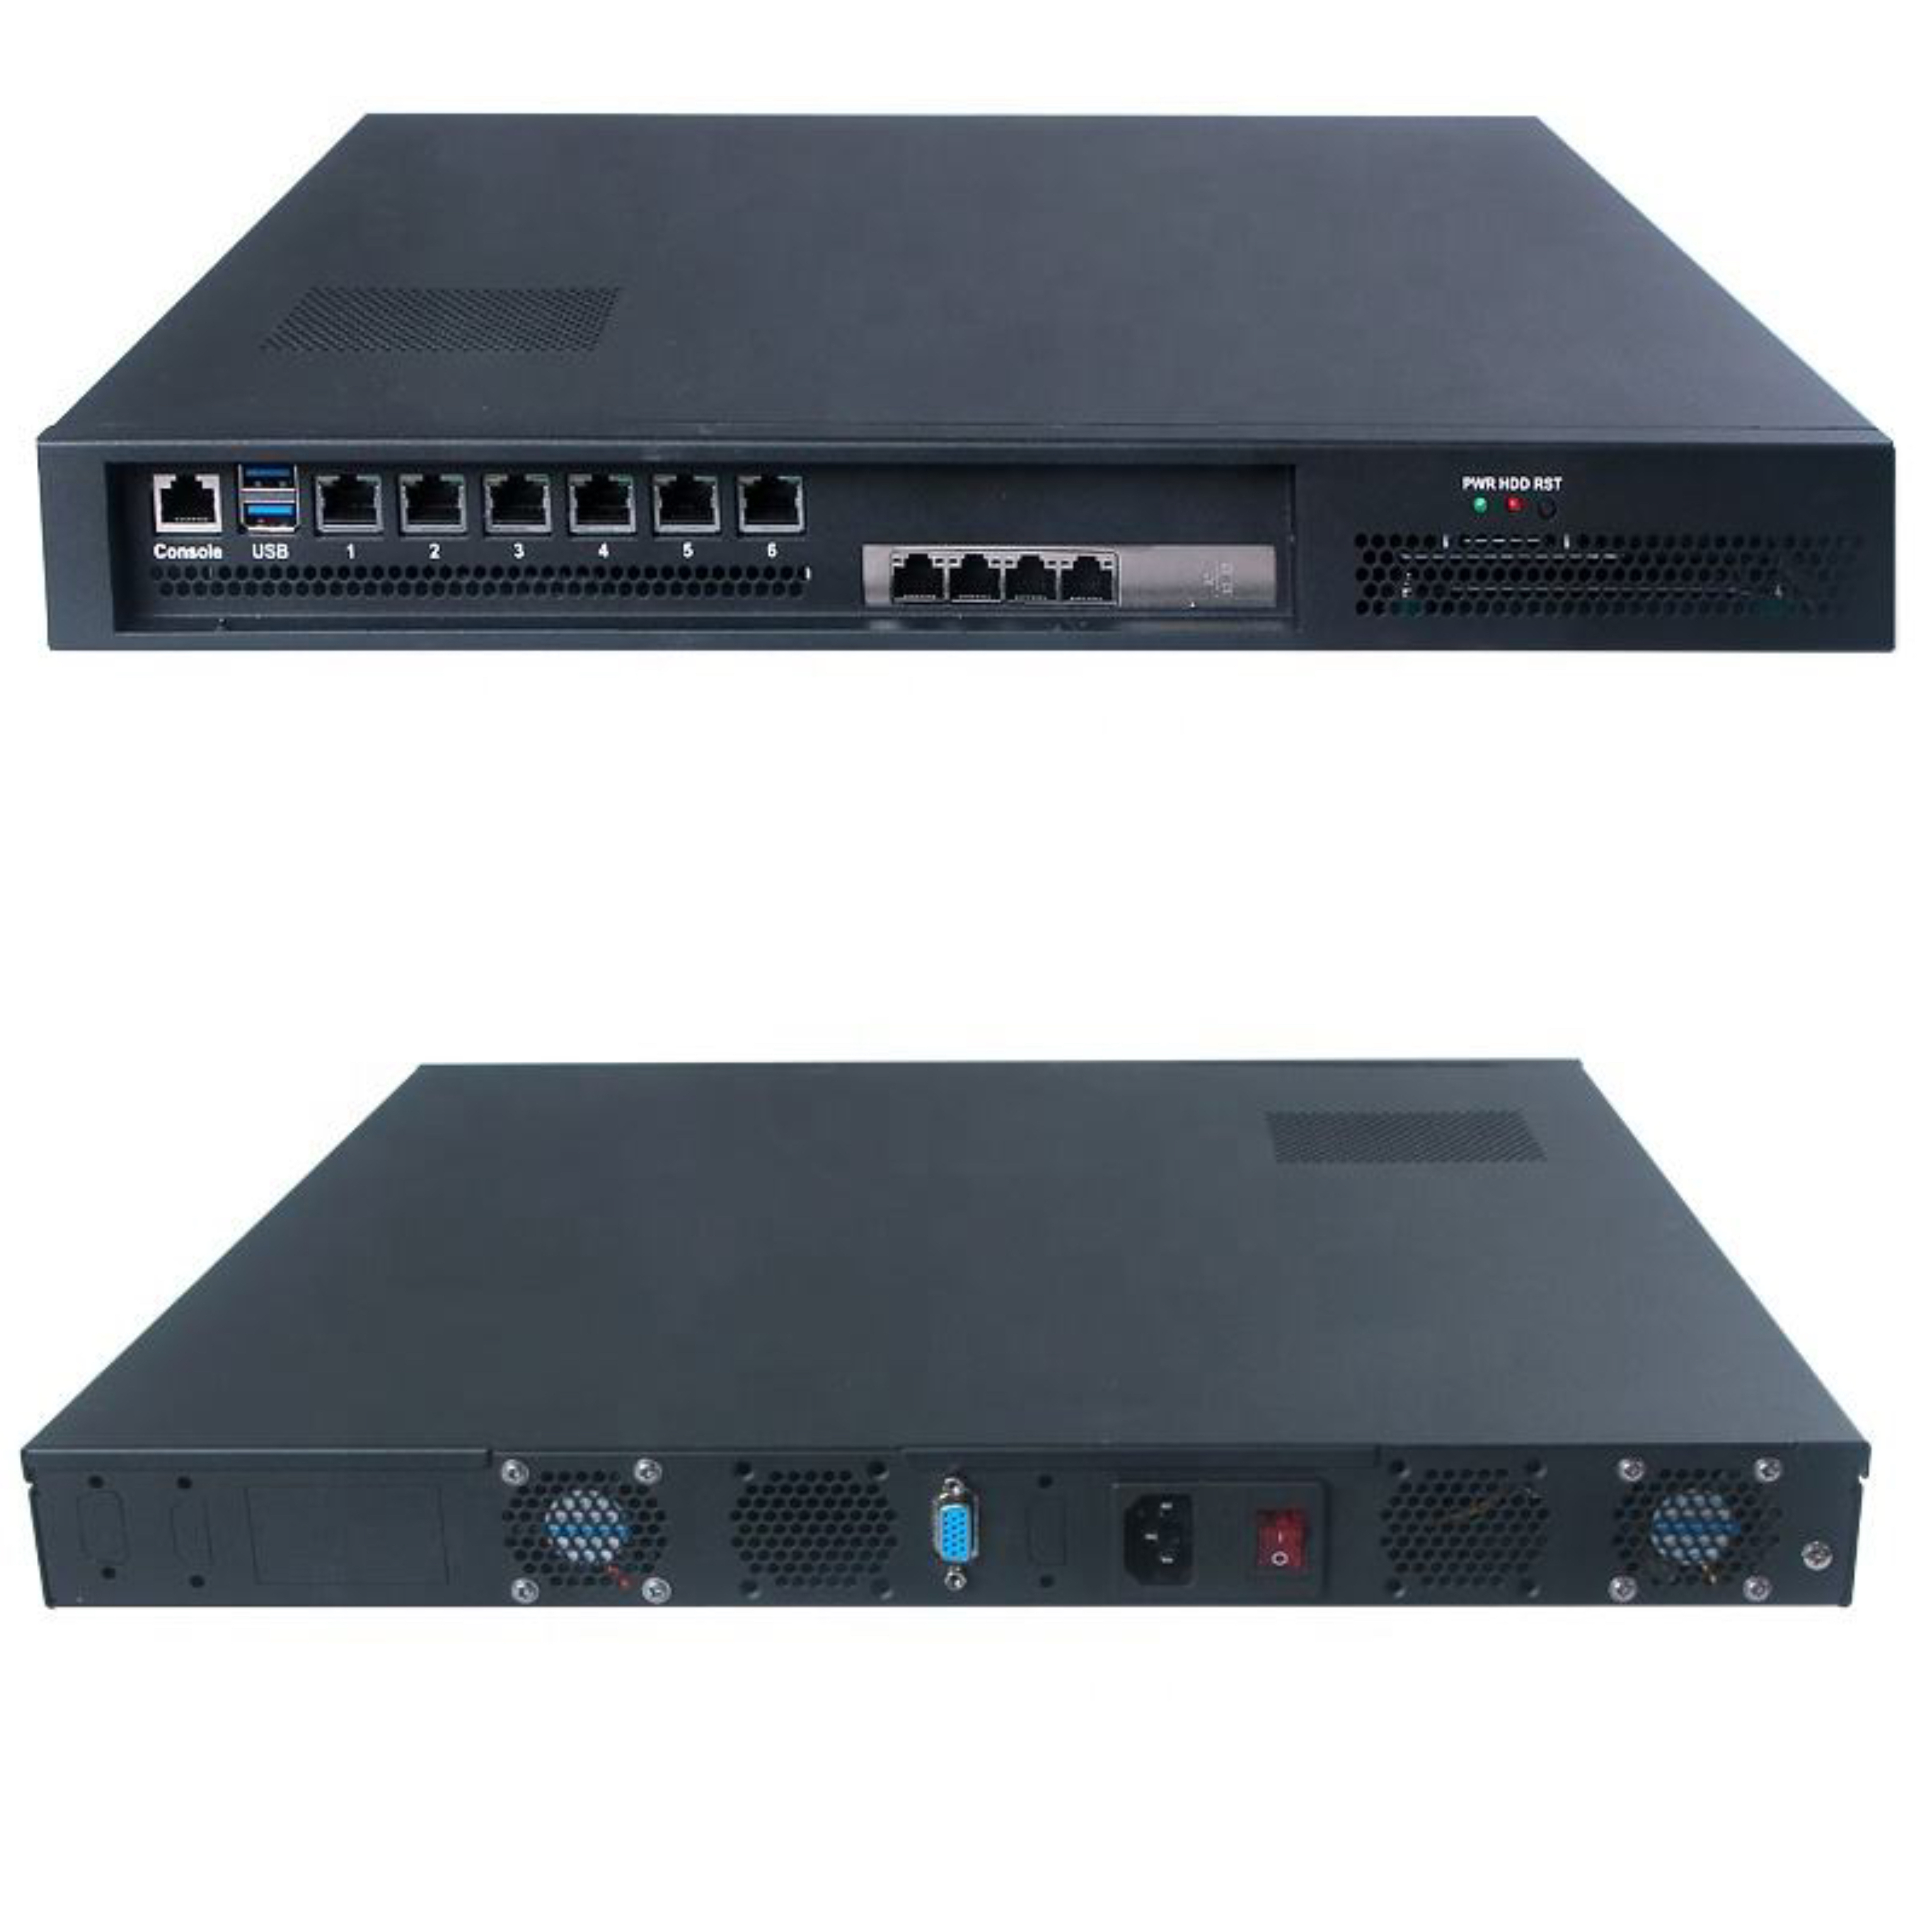 Gen 11th I3-1115G4 DDR4 Network Appliance Industrial 6Lan 1 U Fanless Firewall Router